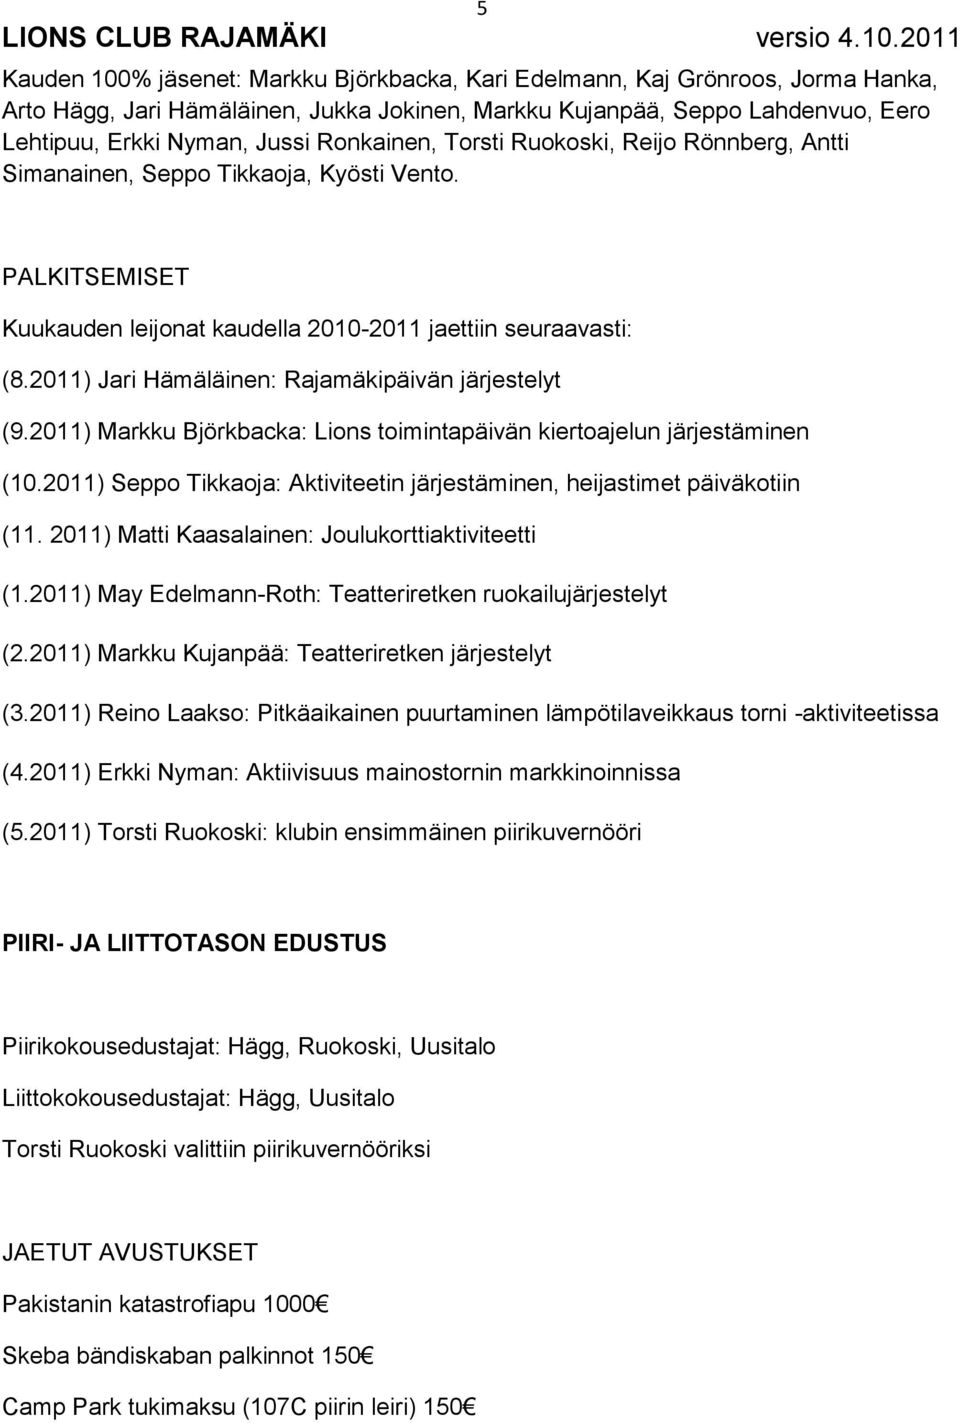 2011) Jari Hämäläinen: Rajamäkipäivän järjestelyt (9.2011) Markku Björkbacka: Lions toimintapäivän kiertoajelun järjestäminen (10.